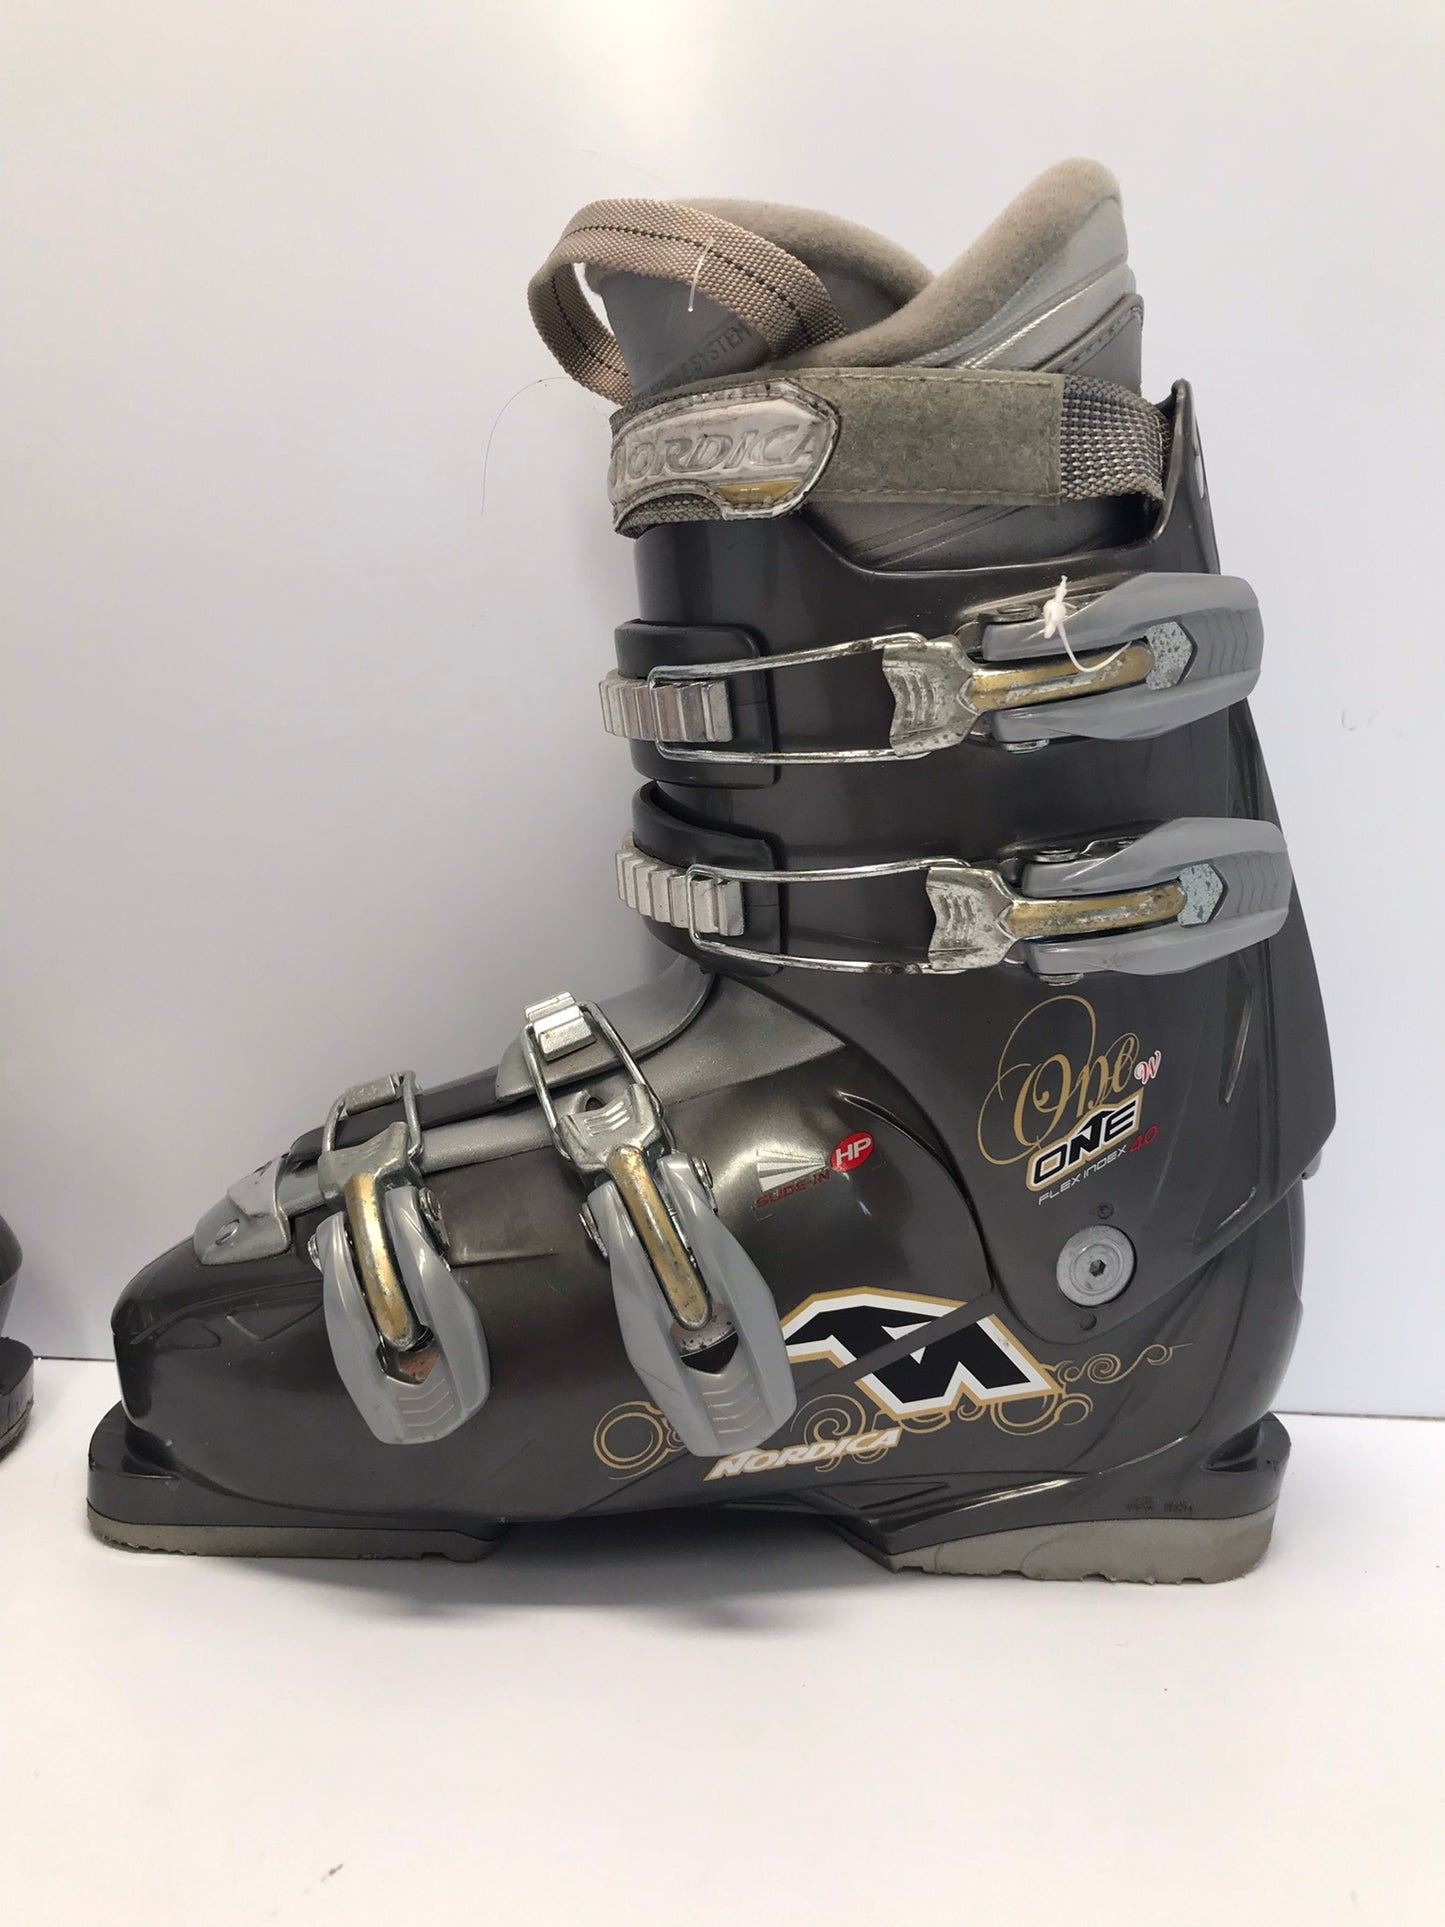 Ski Boots Mondo Size 26.5 Men's Size 8.5 Ladies Size 9.5 308 mm Nodica Grey Gold Excellent